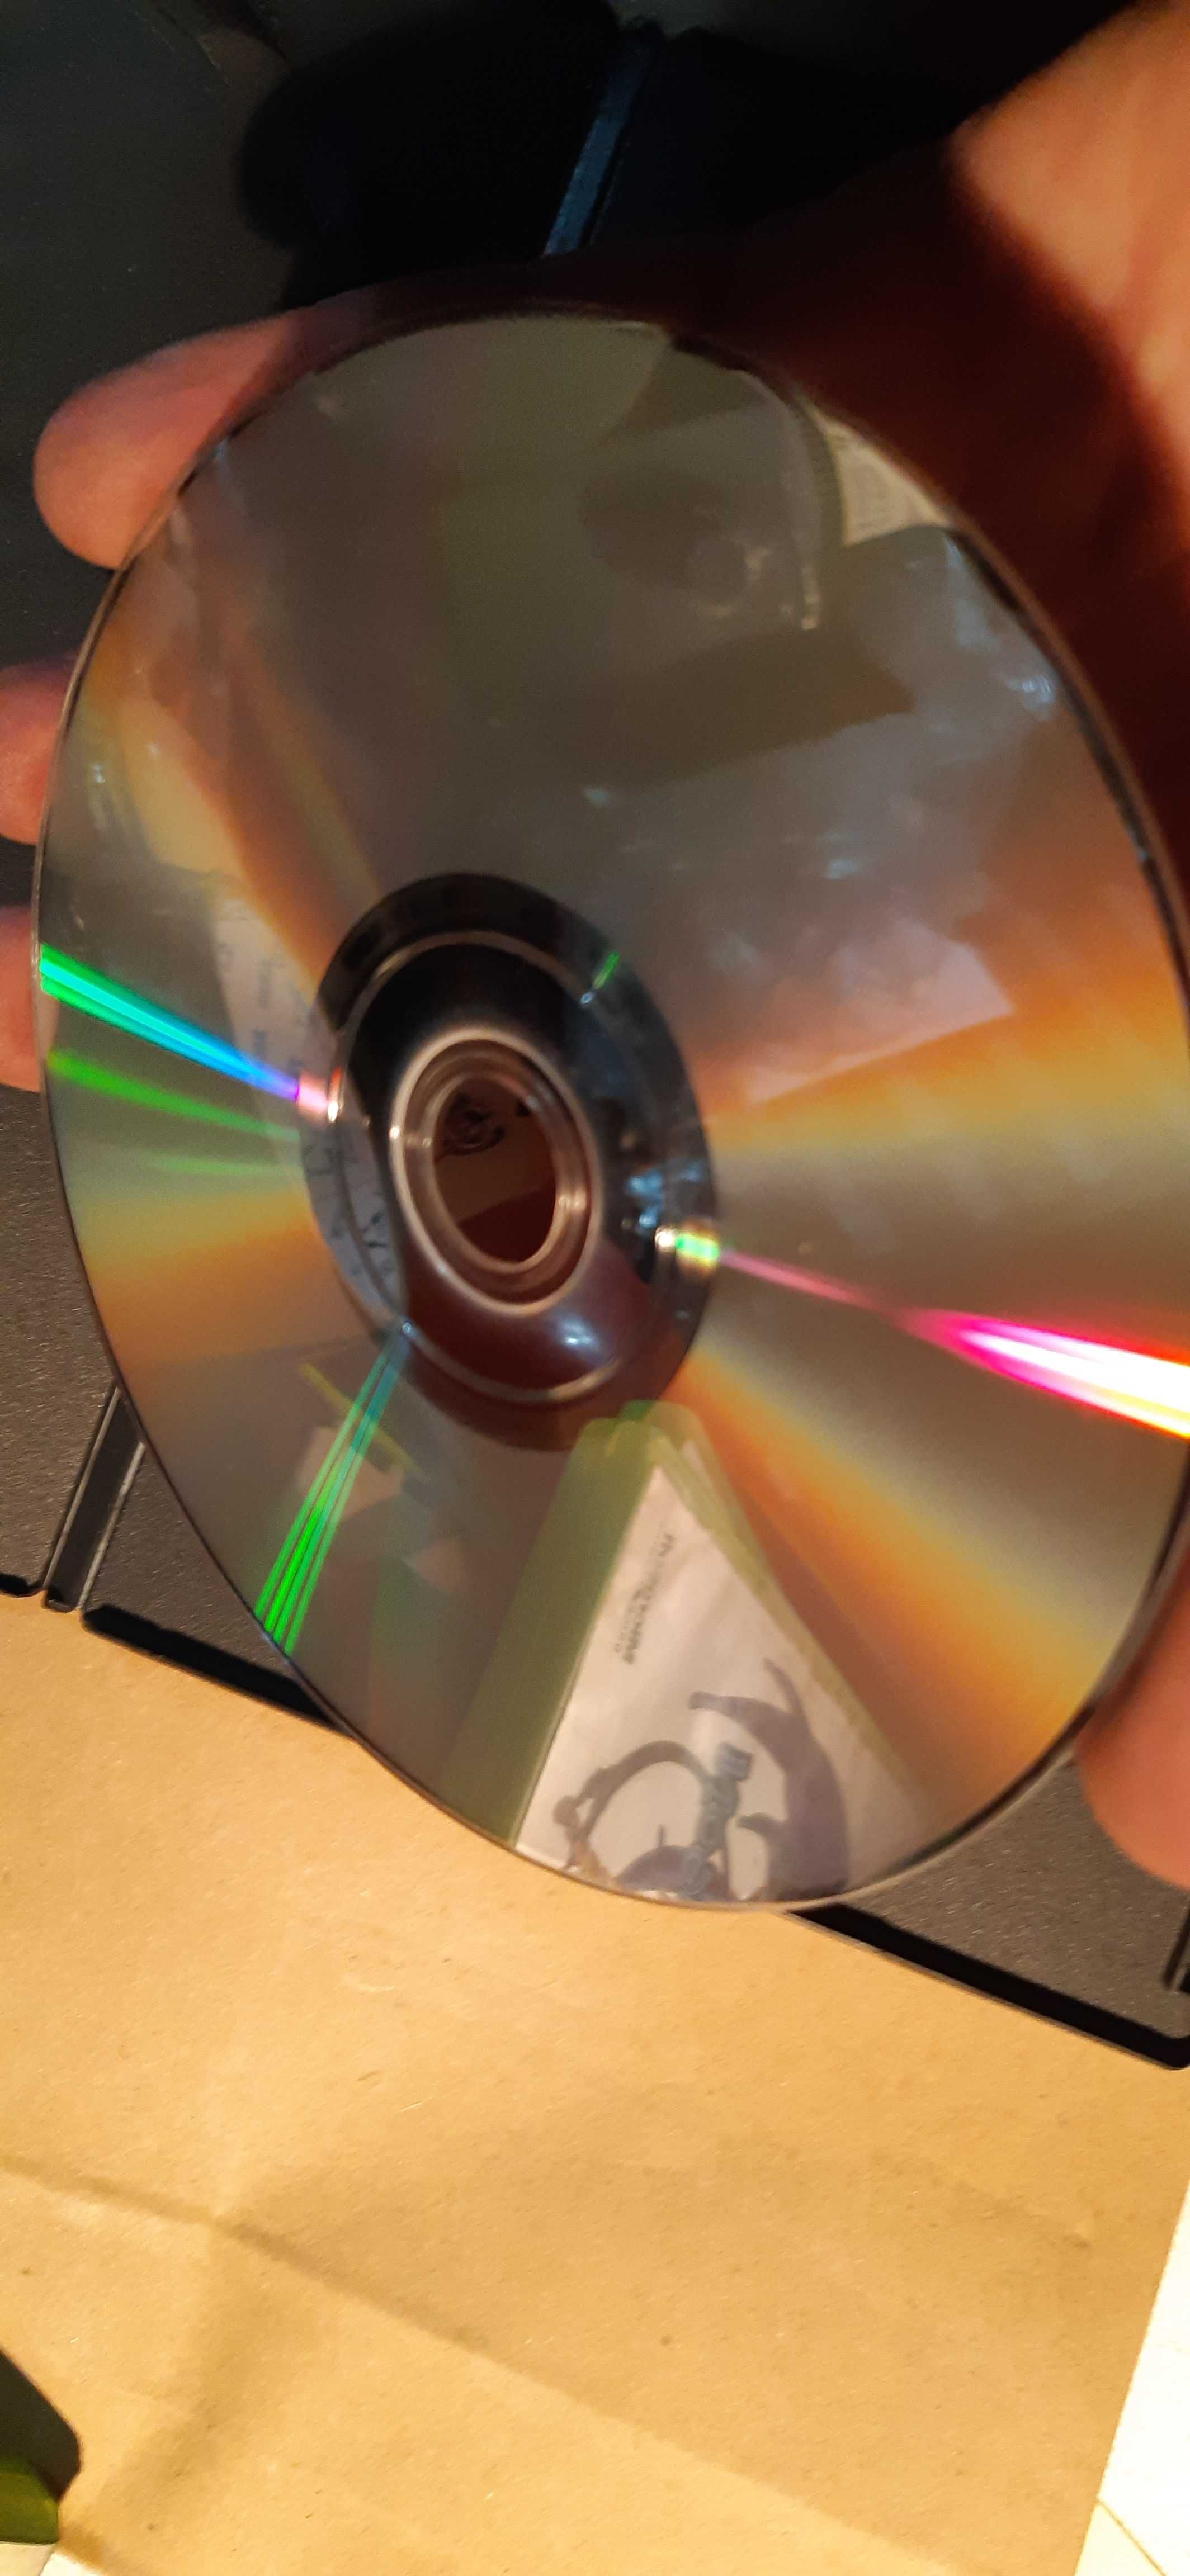 2 dvd Dziennik Bridget Jones/ W pogoni za rozumem DVD